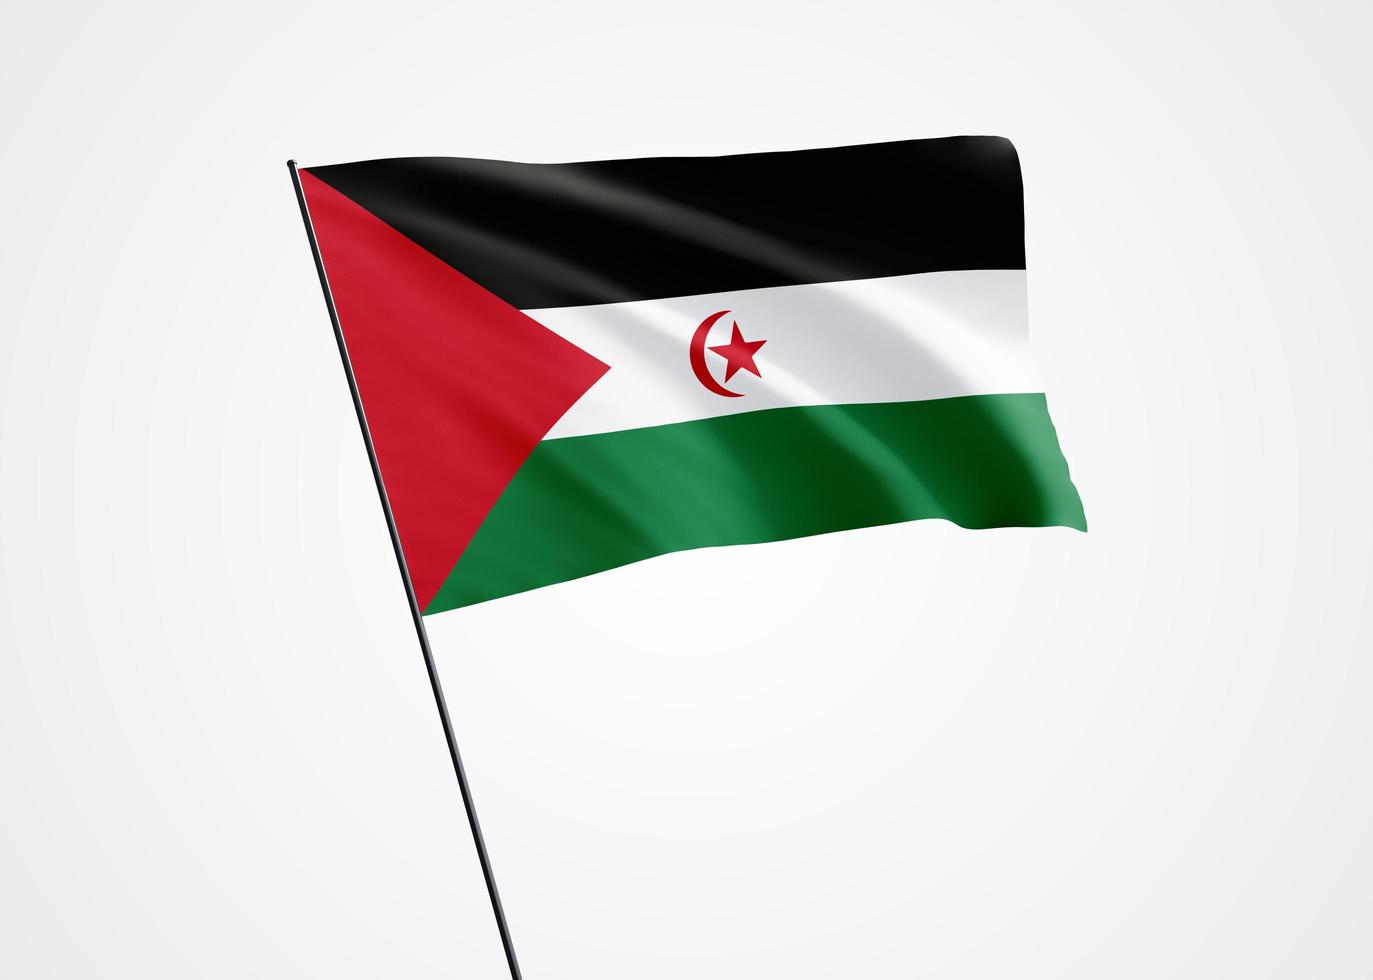 sahara occidental volant haut dans le fond isolé. 27 février fête de l'indépendance du sahara occidental. collection de drapeau national du monde illustration 3d photo